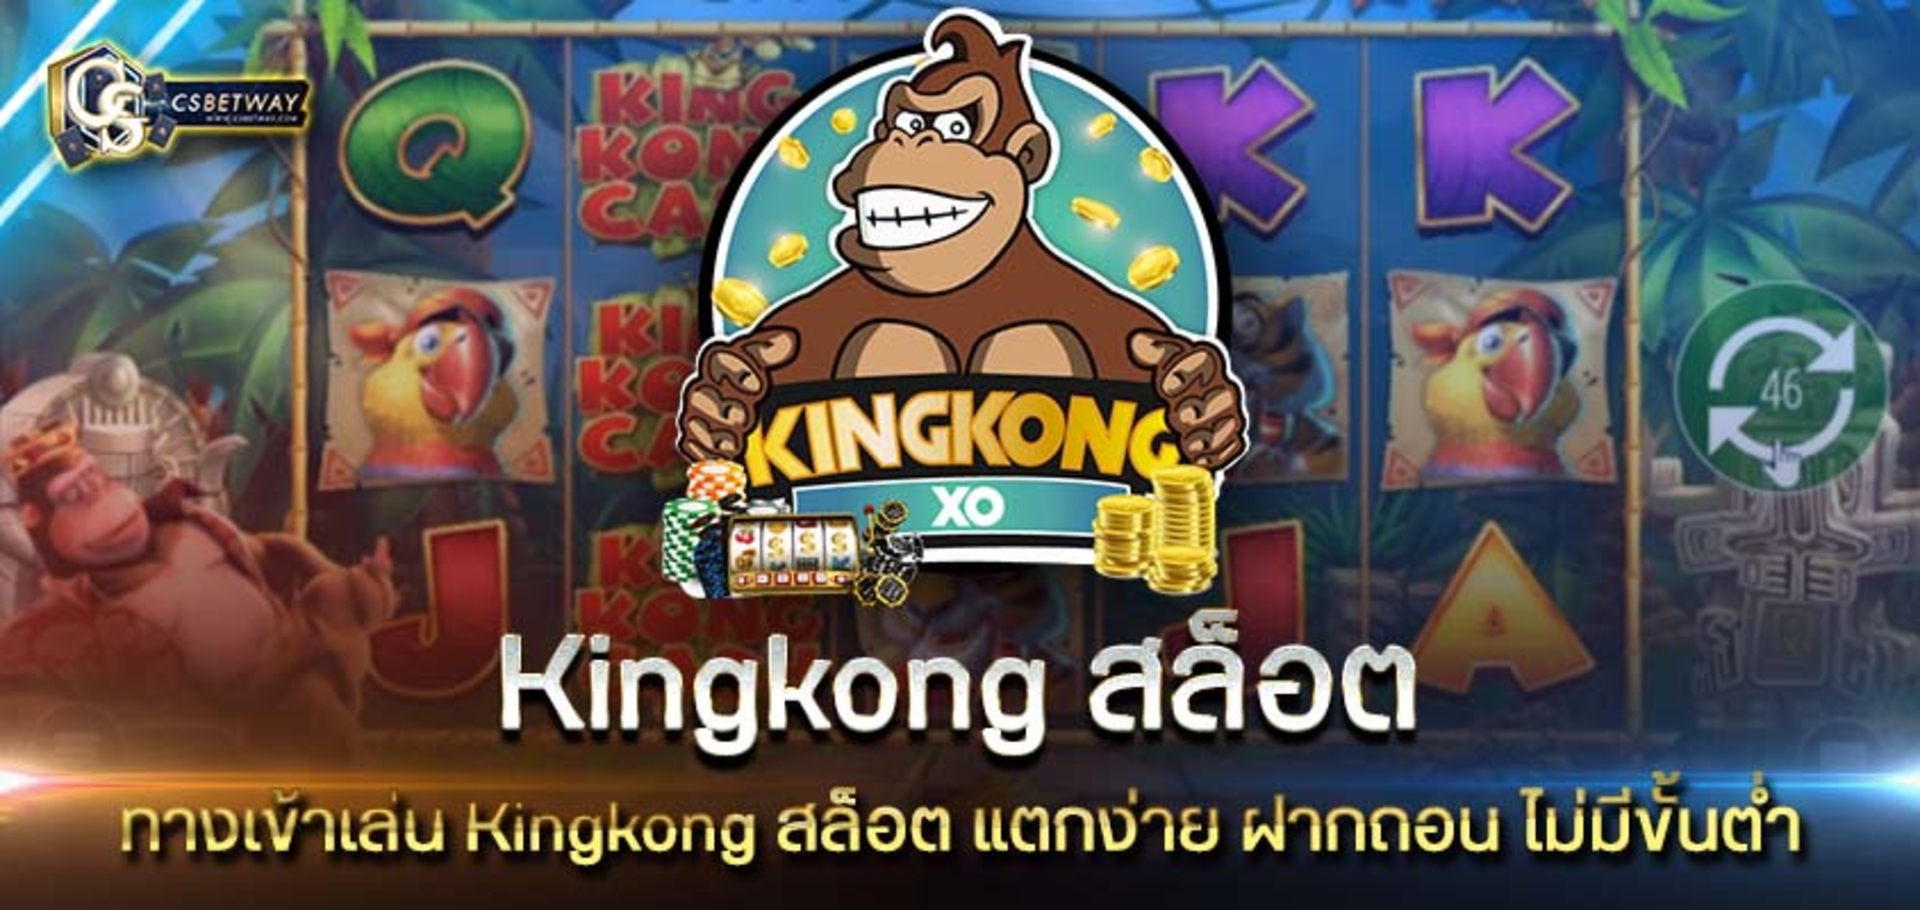 ทางเข้าเล่น Kingkong สล็อต แตกง่าย คิงคิงสล็อต ฝากถอน ไม่มีขั้นต่ำ